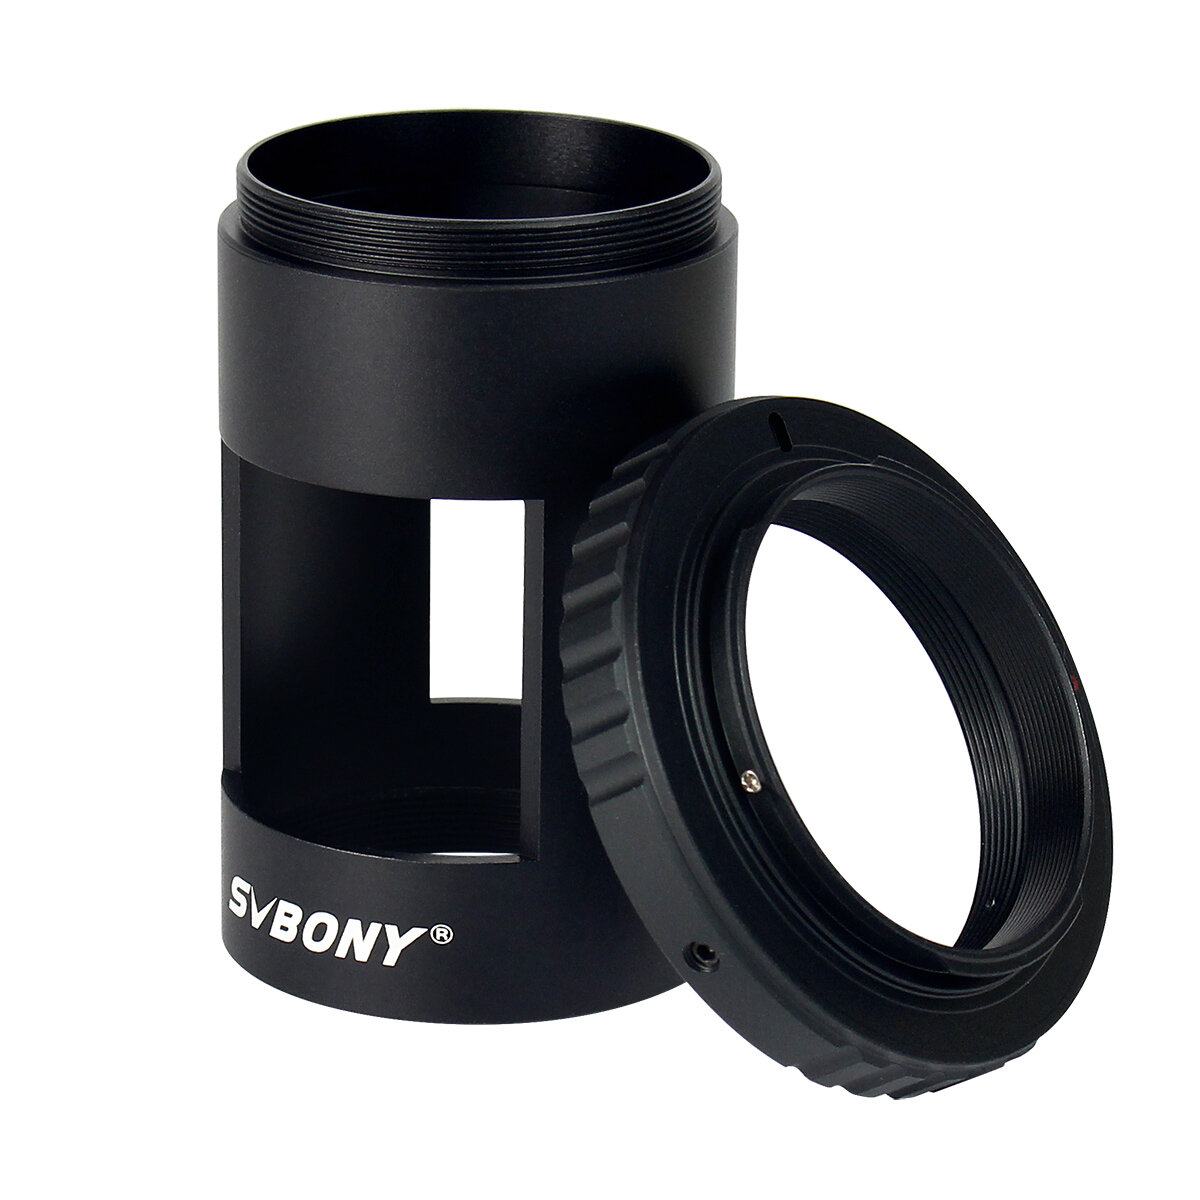 SVBONY T-ring Camera Lens Adapter voor Nikon DSLR / SLR Fotografie Mouw M42 Draad voor Landschap Len